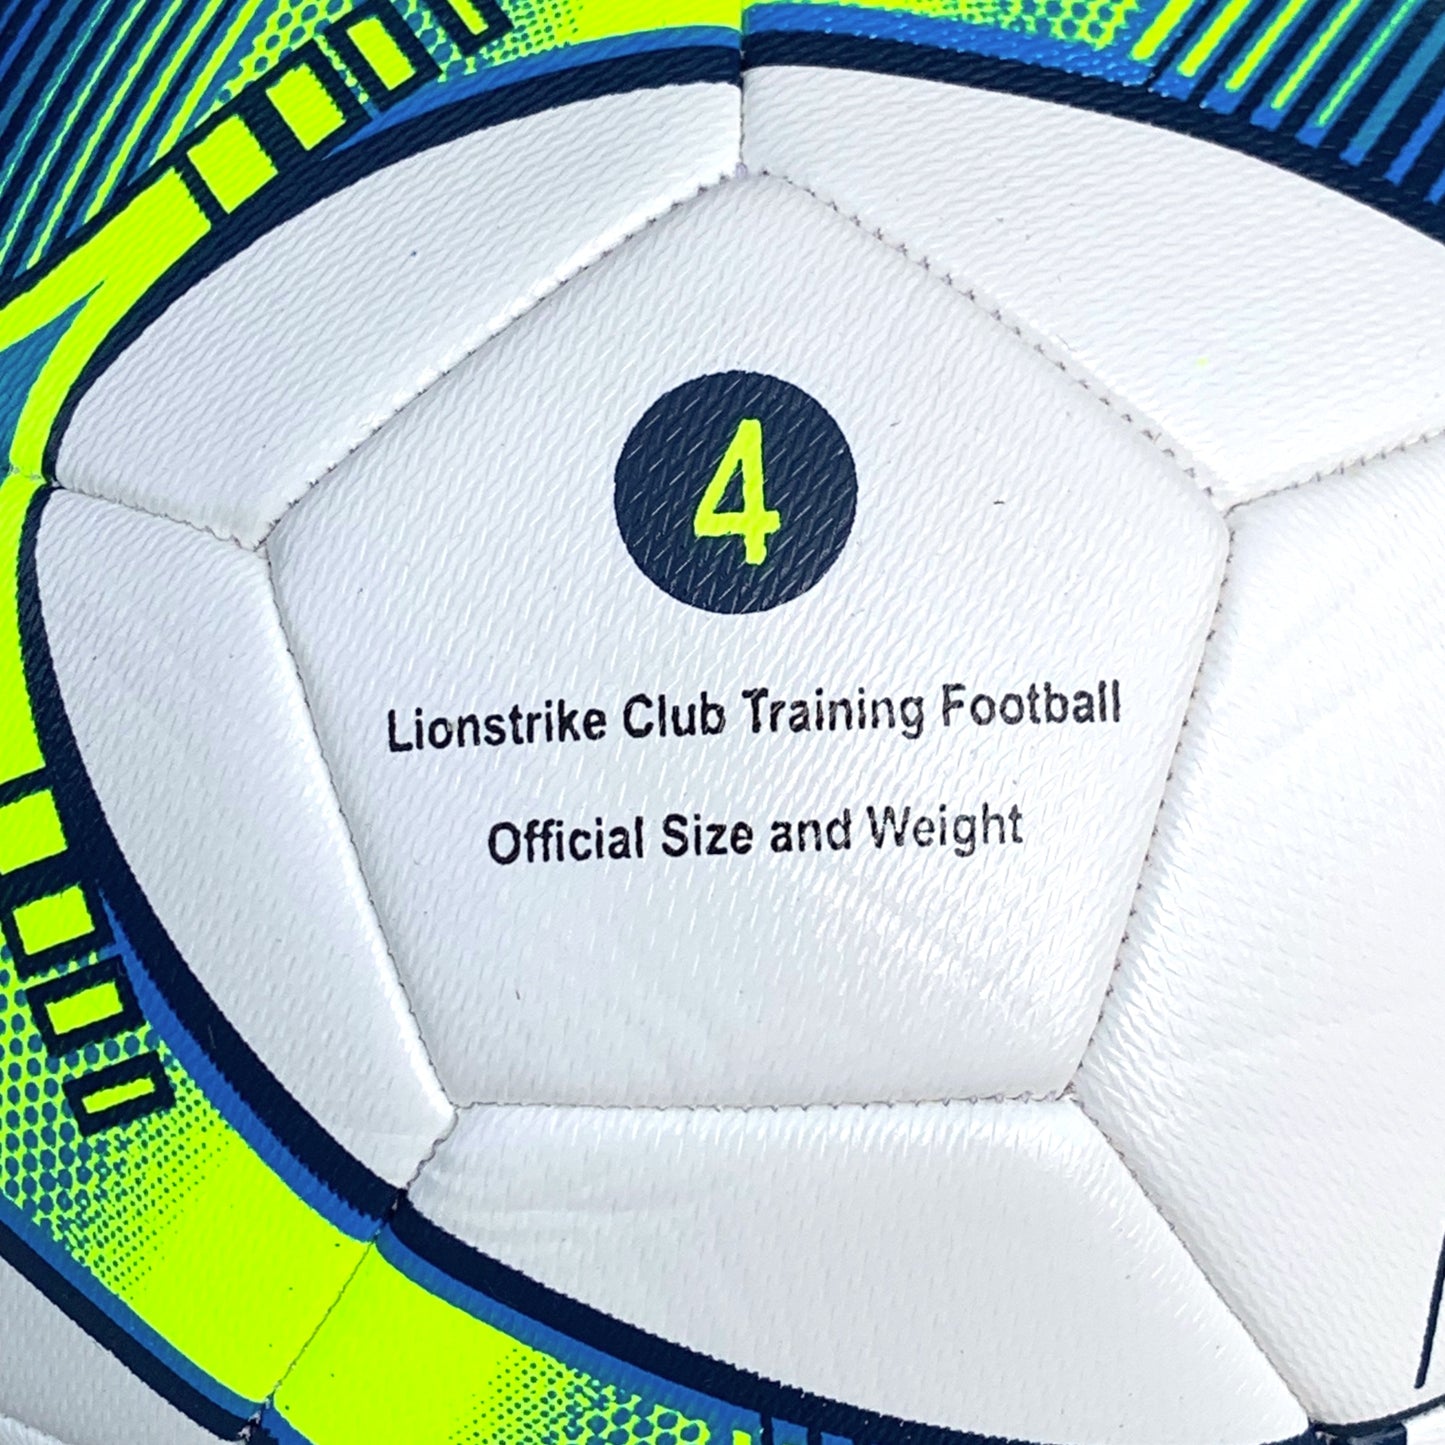 Lionstrike Club Training Football